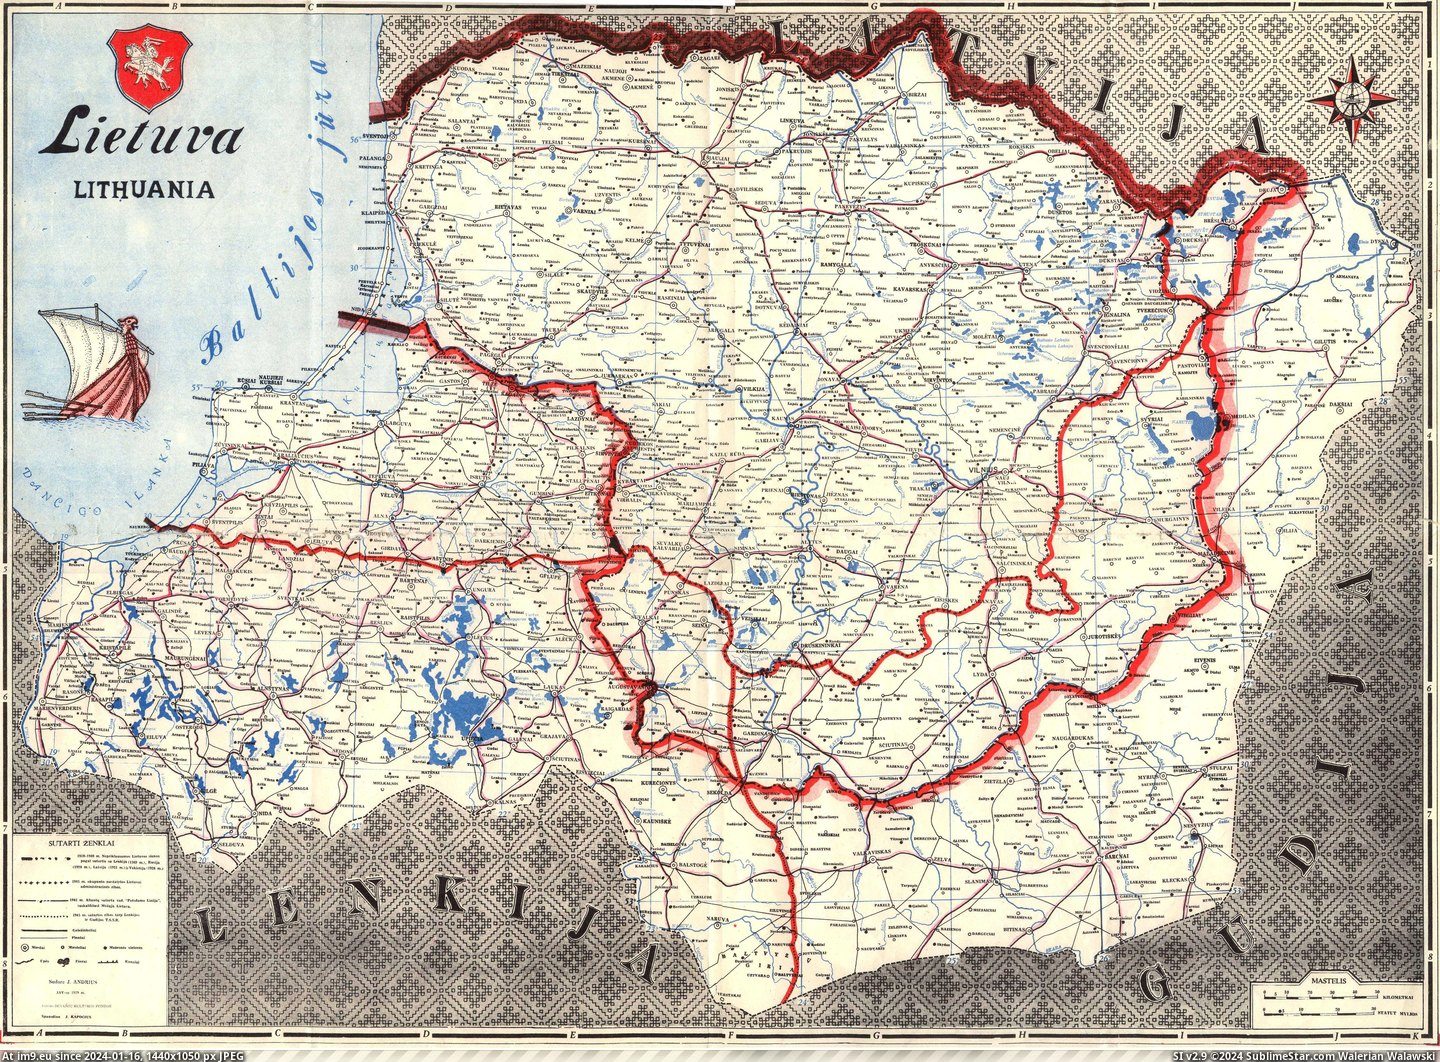  #Lietuva  1918-lietuva Pic. (Bild von album lenkinimas))